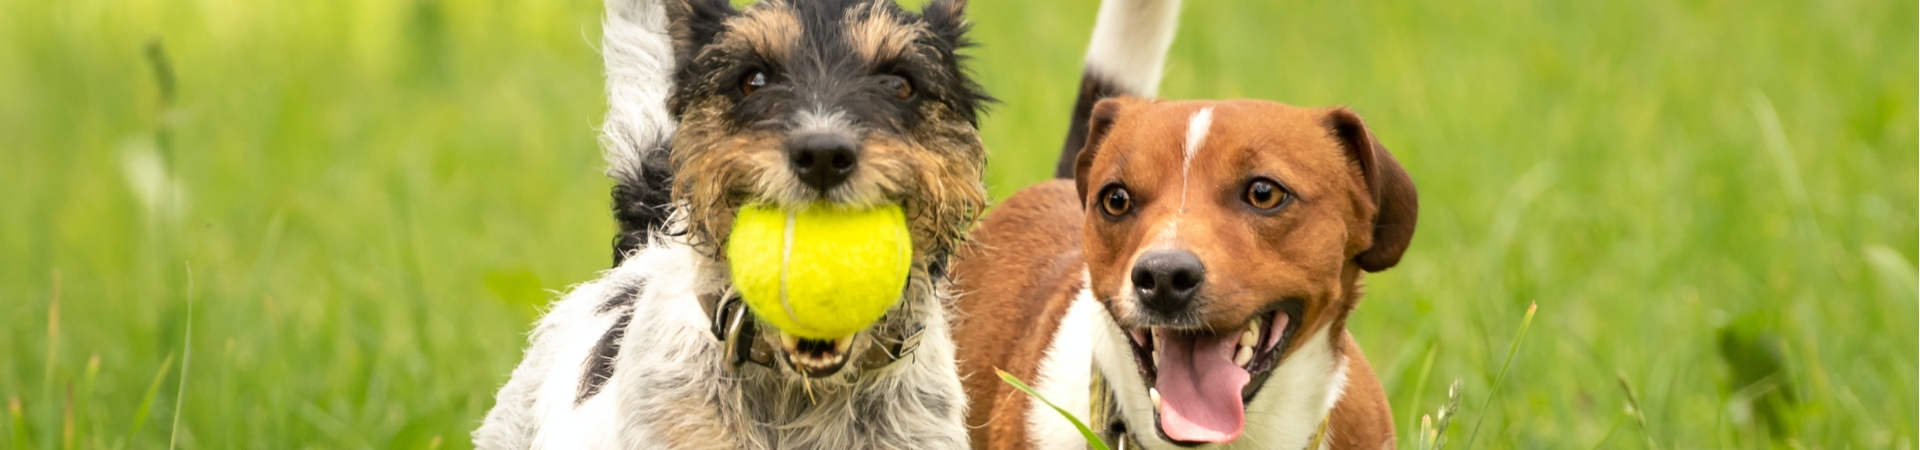 2 Hunde auf Wiese mit gelben Tennisball spielend